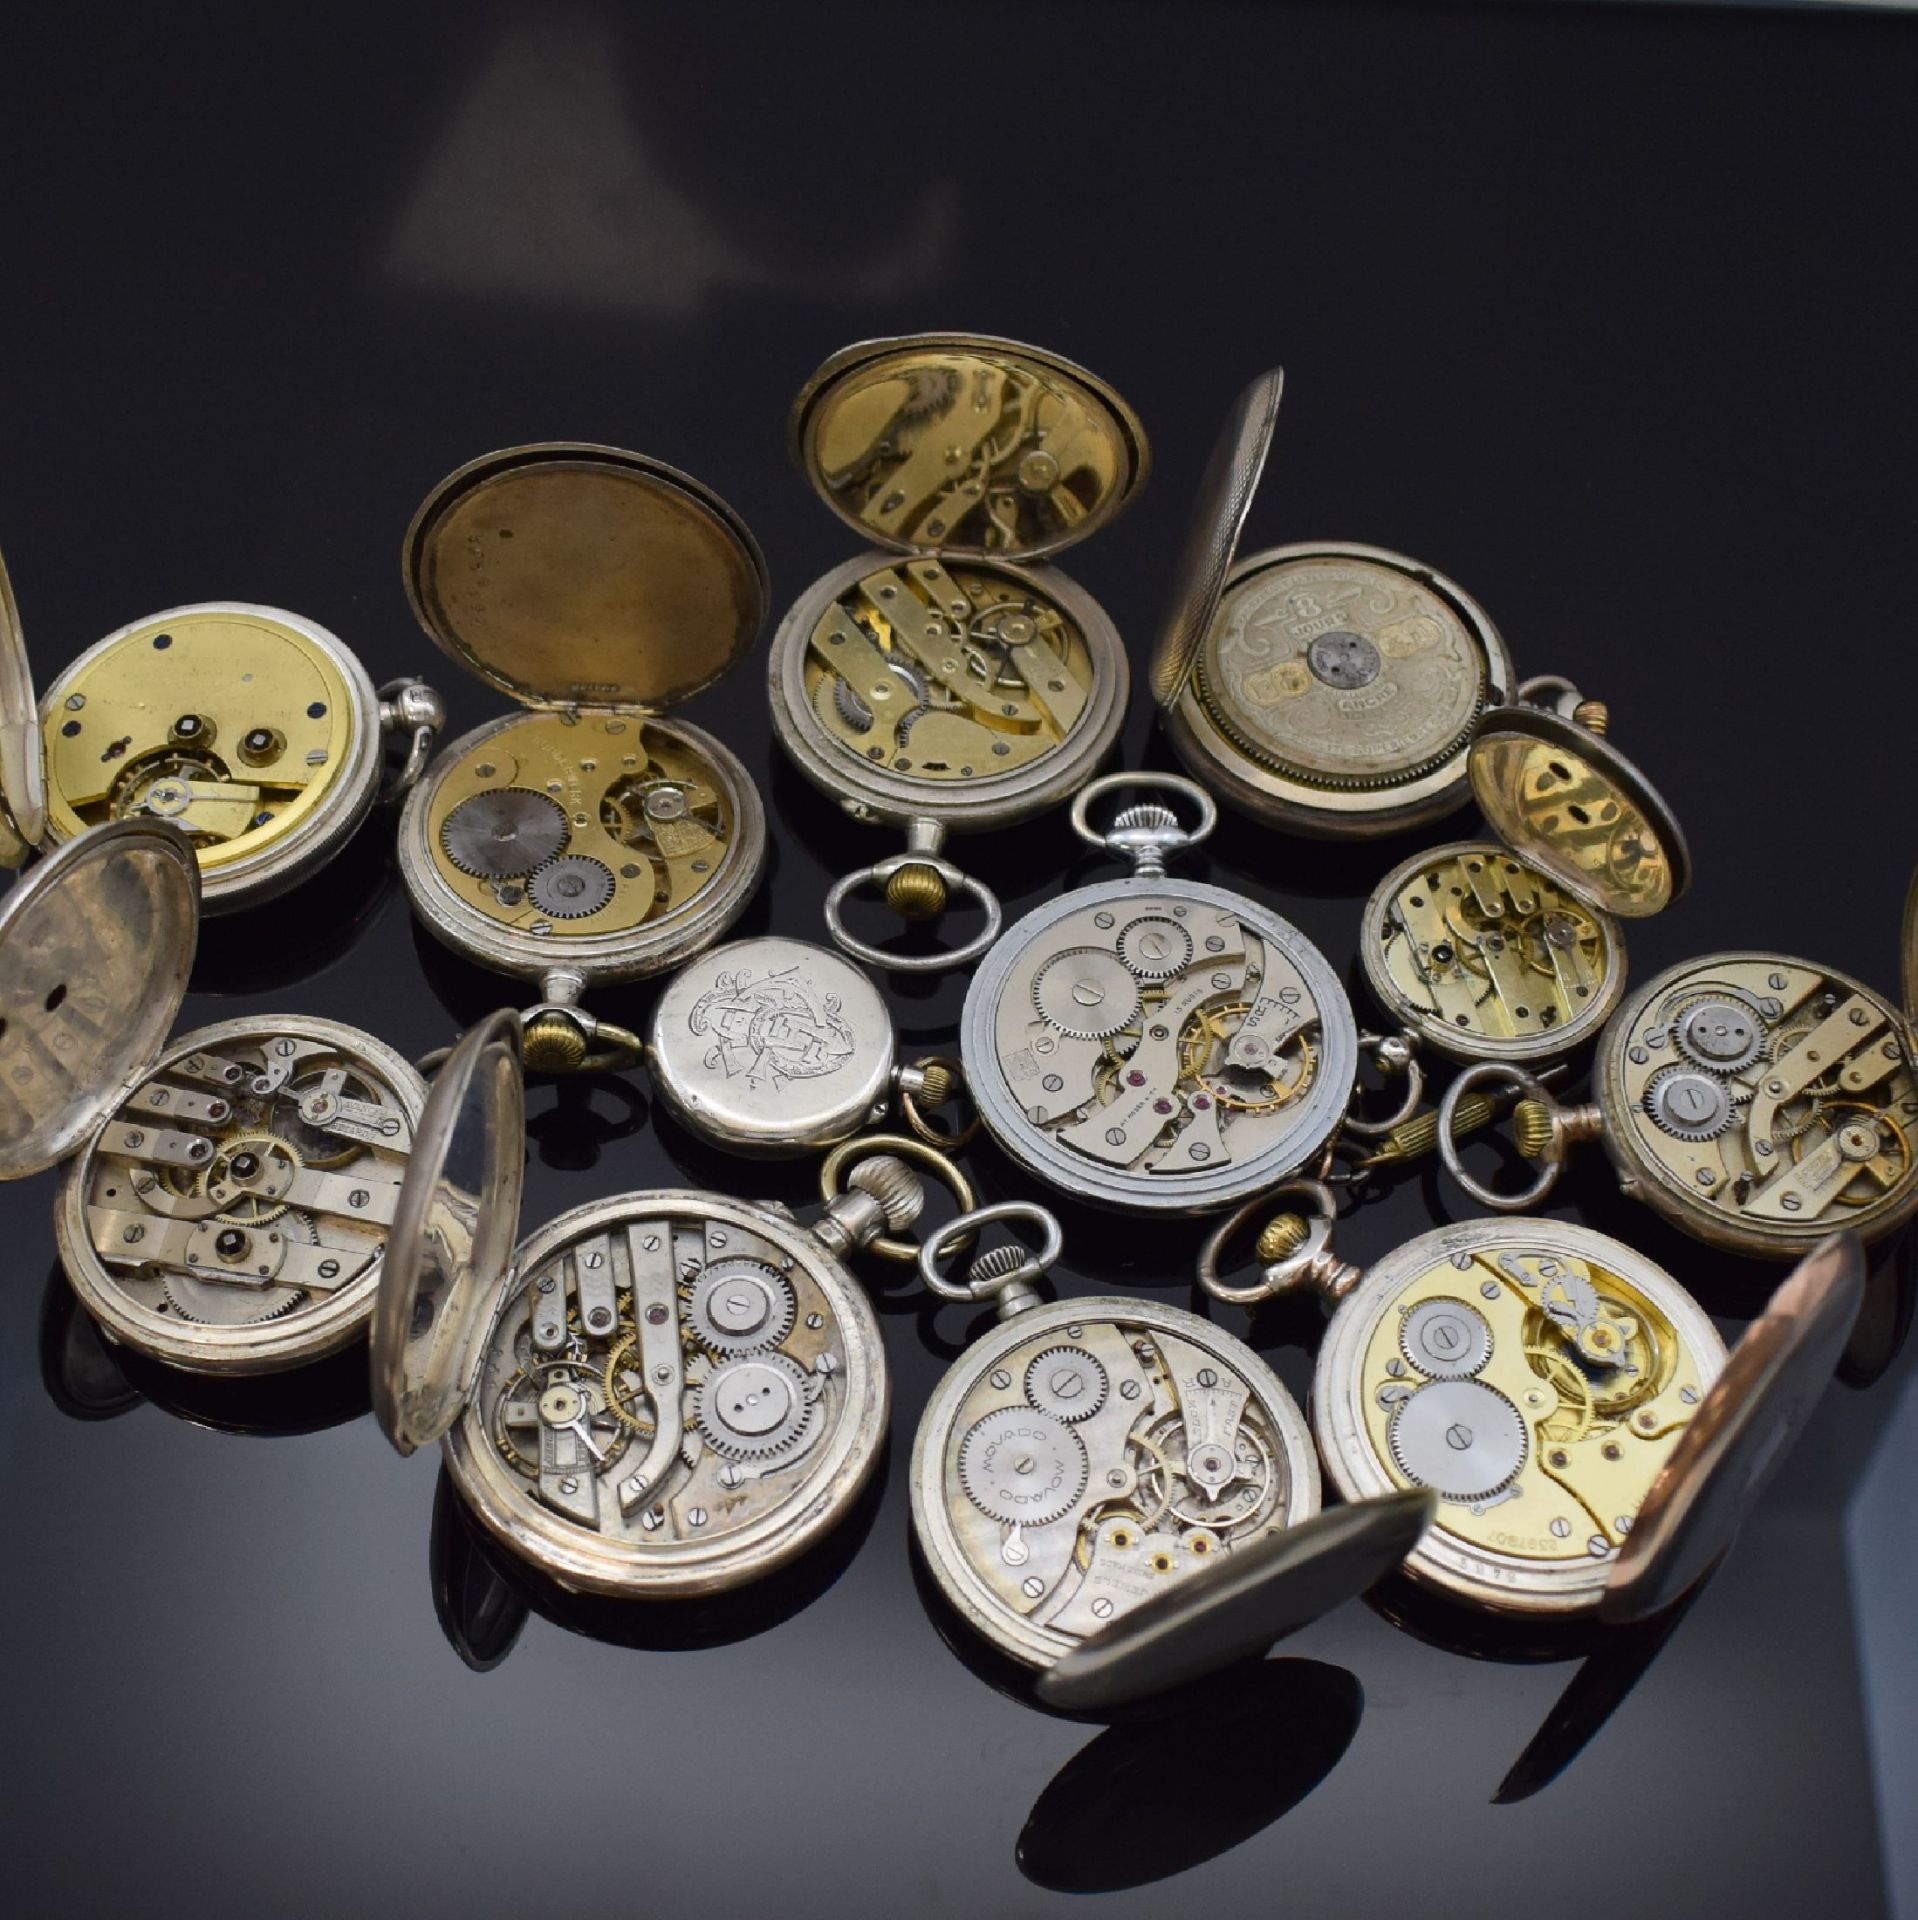 12 Taschenuhren darunter Zenith, Movado, Hebdomas, H.Moser - Bild 3 aus 3